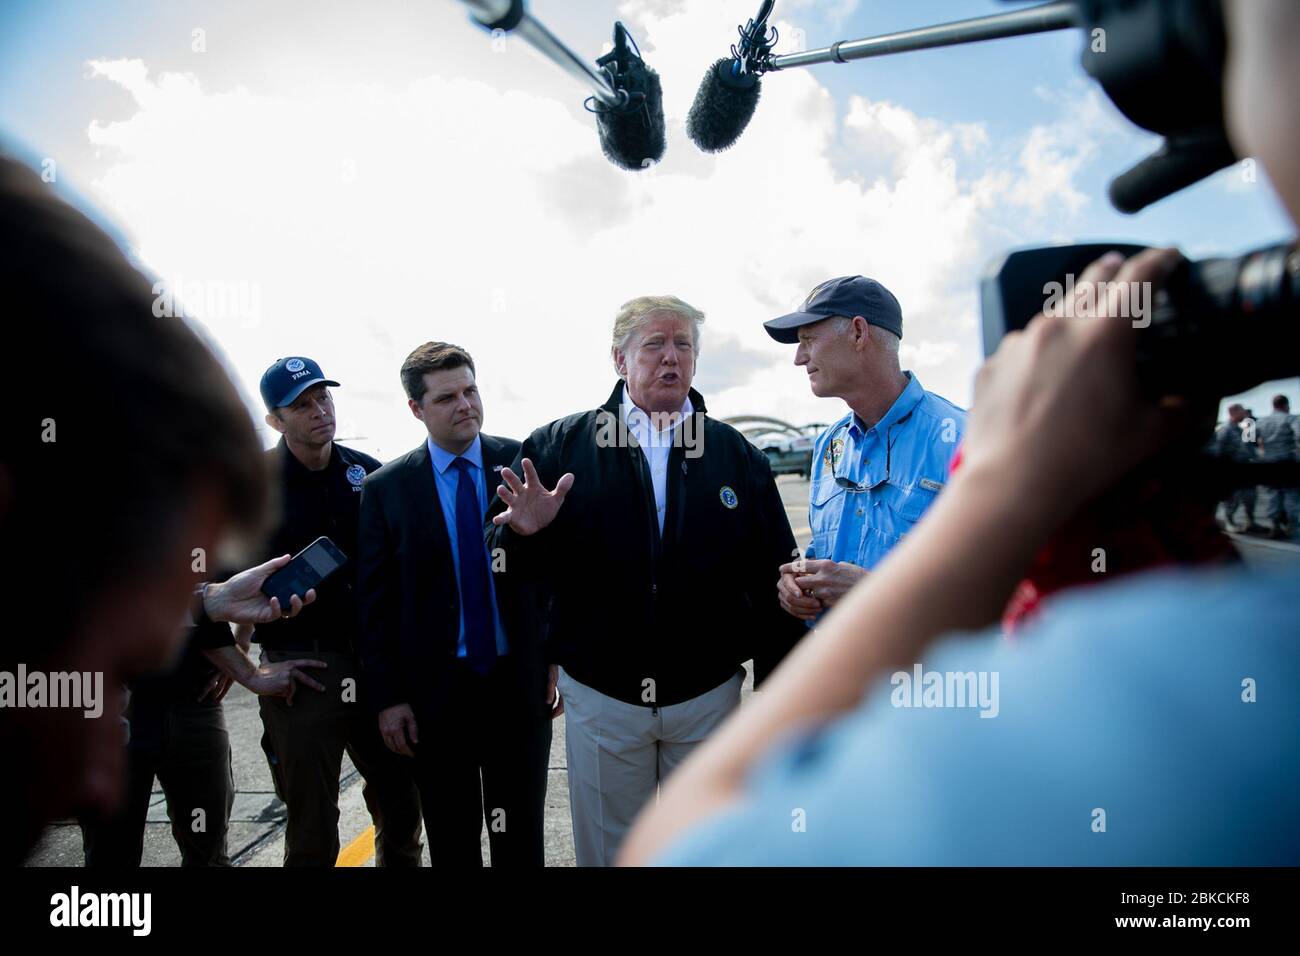 Le président Donald J. Trump parle avec les médias après son arrivée lundi 15 octobre 2018 à la base aérienne d'Eglin, le président de la FLA Donald J. Trump et la première dame Melania Trump visitent la Floride et la Géorgie Banque D'Images